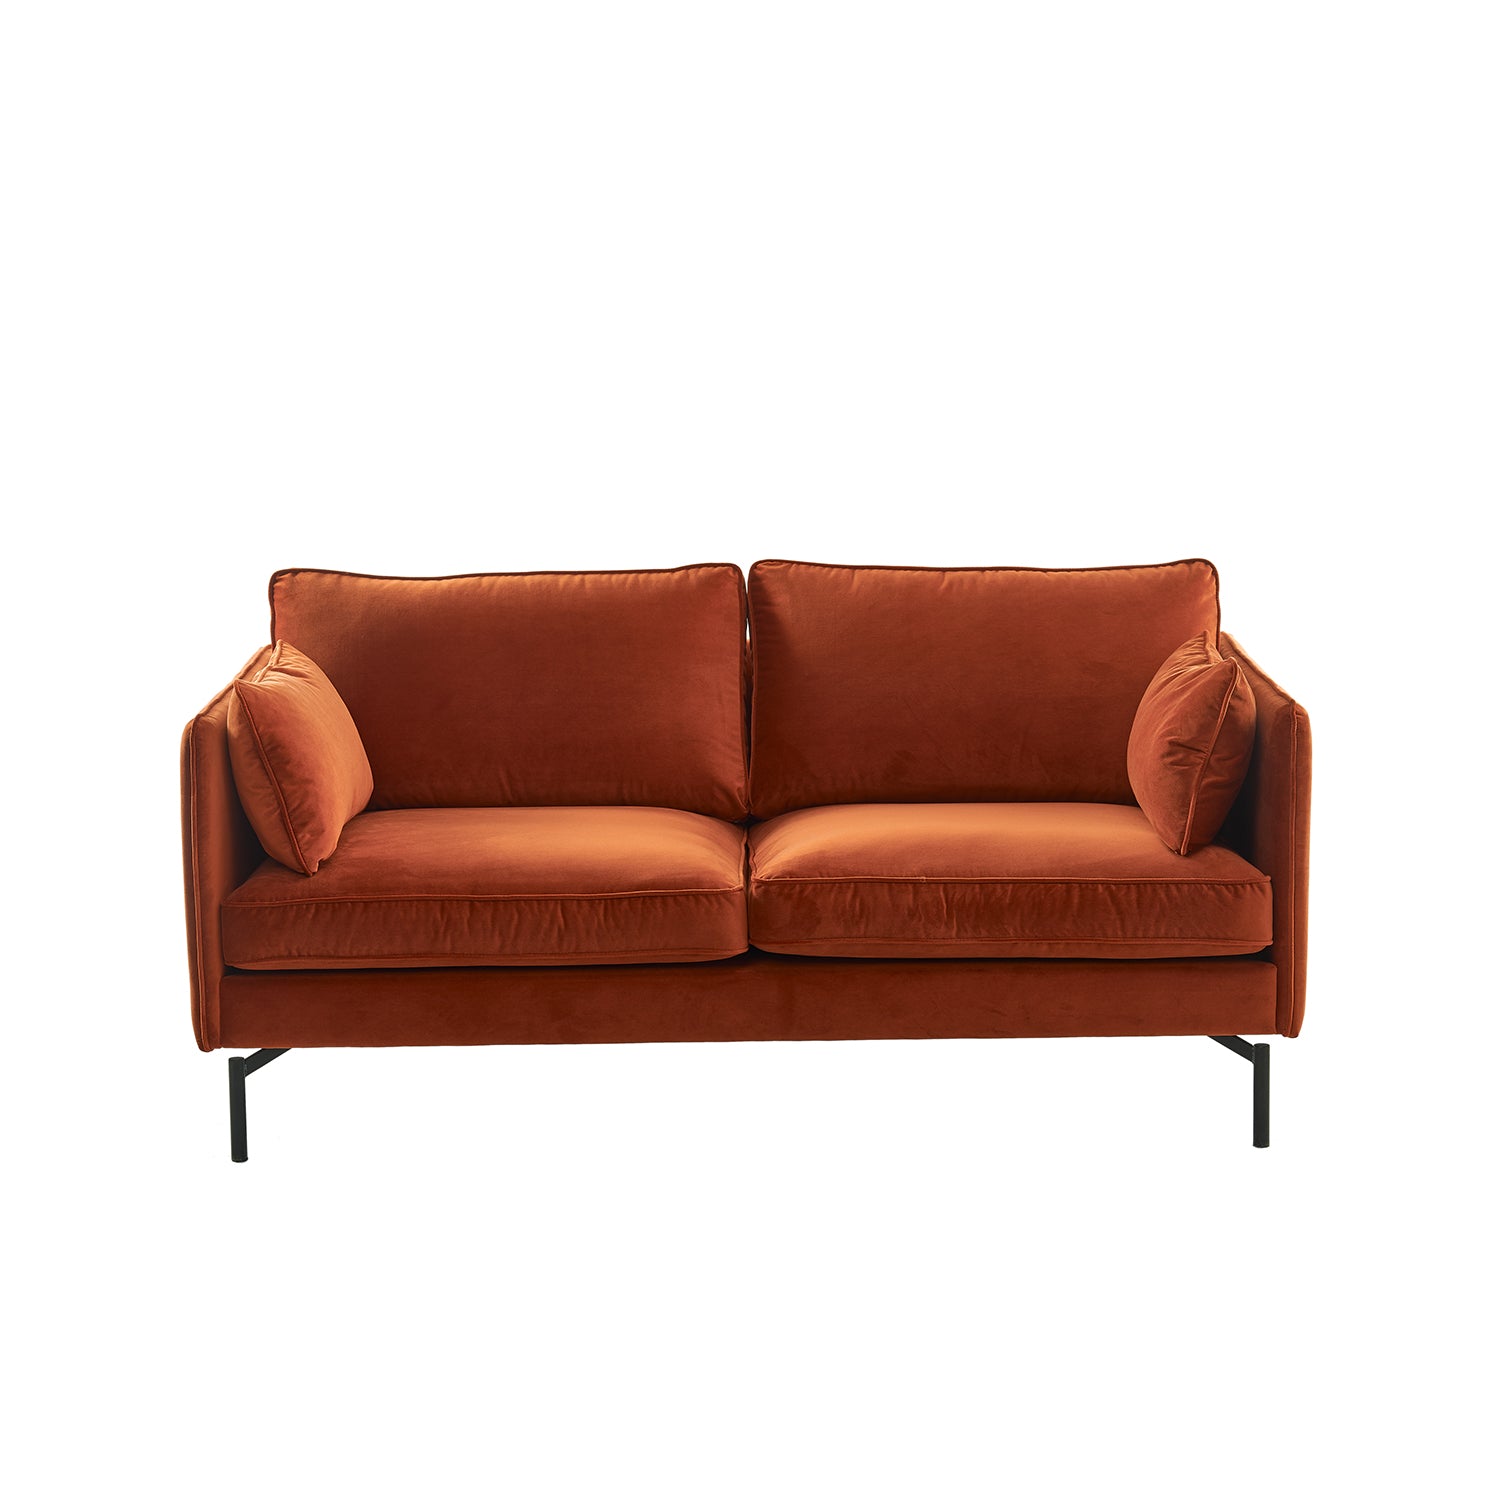 PPno.2 Sofa - The Design Choice